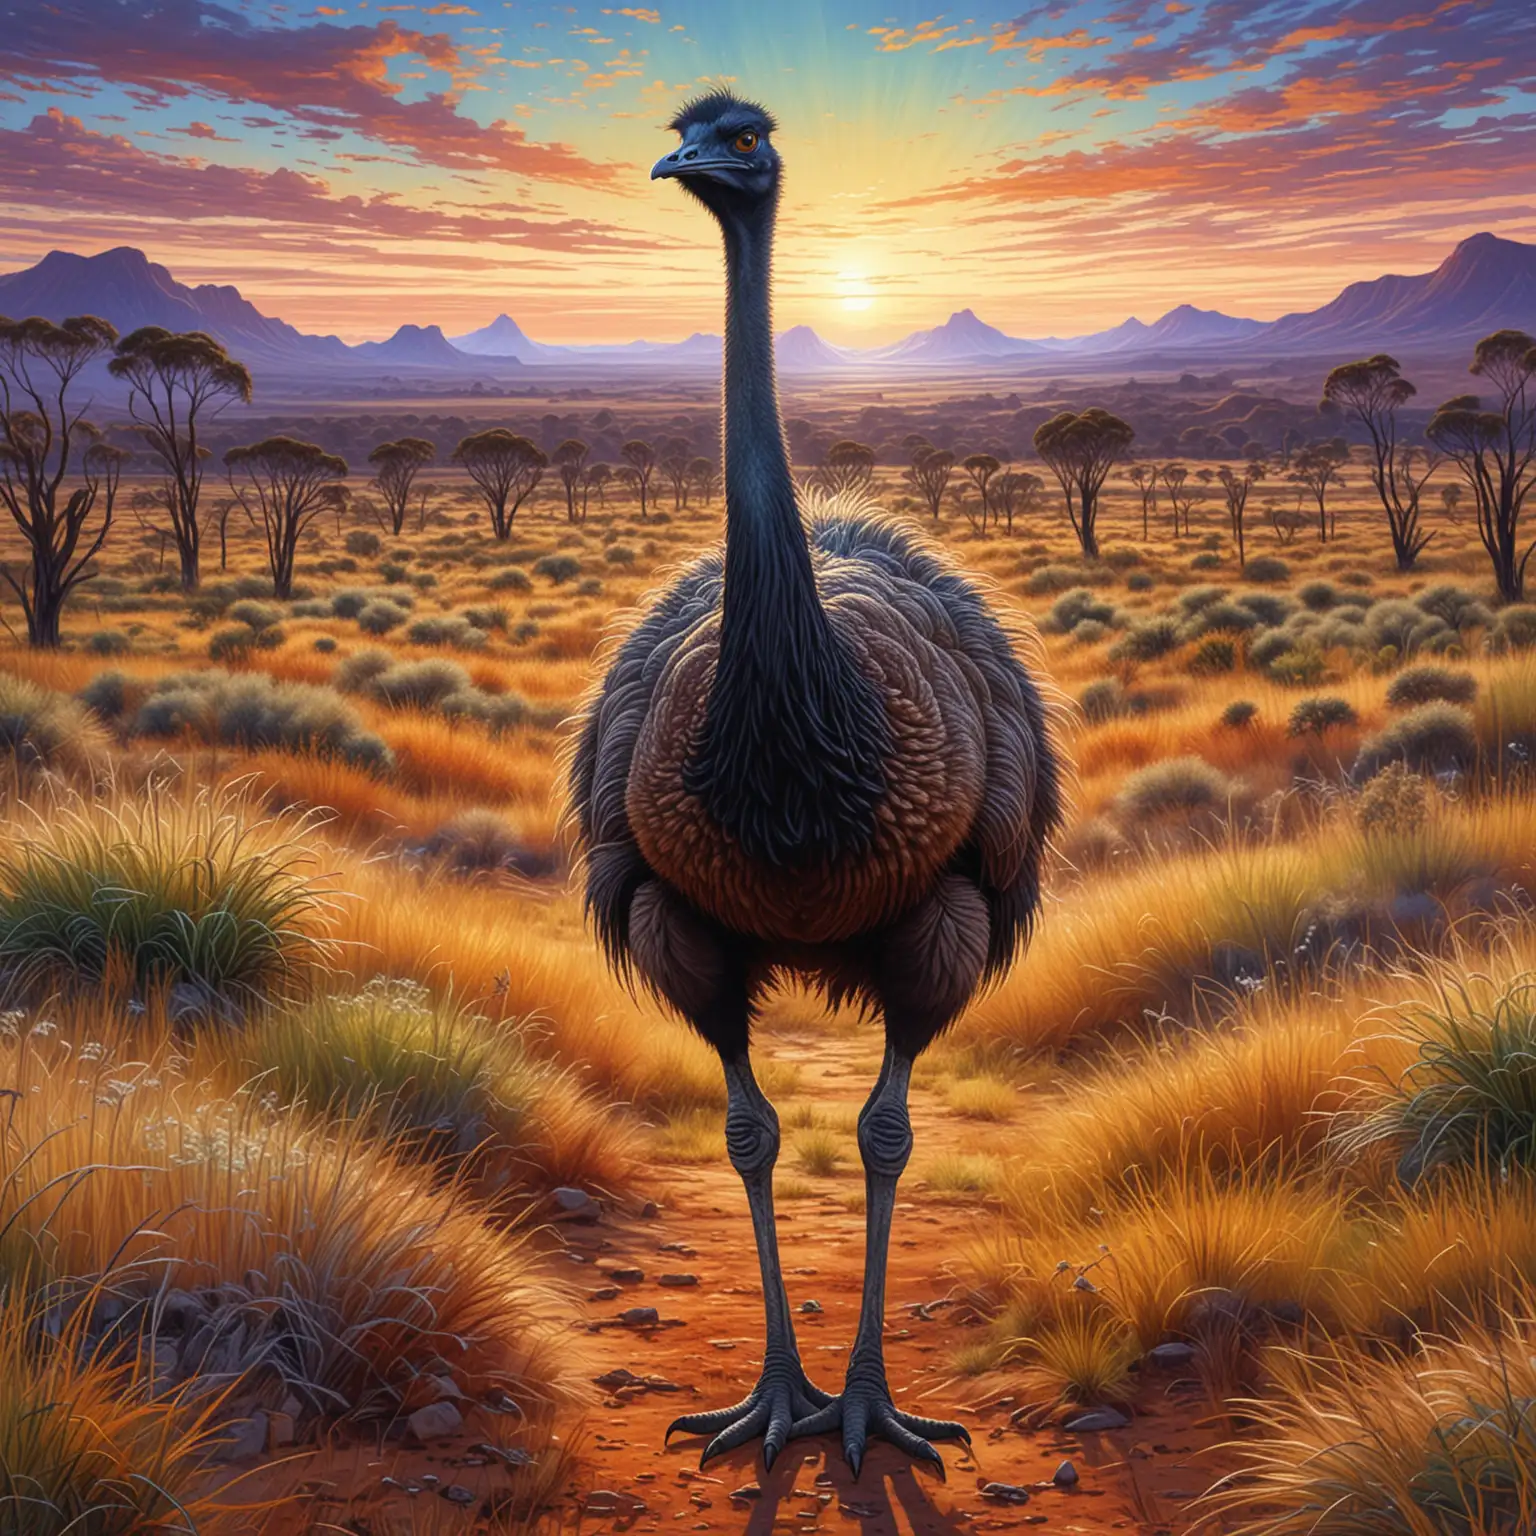 illustration,  neuronalen Stiltransfer, hintergrund : Australien
Emu: Ein stattlicher Emu, der durch die Grasländer Australiens streift, seinen langen Hals und seine kräftigen Beine in voller Pracht zeigt. Sein dunkles Federkleid und sein stolzer Blick machen ihn zu einem Symbol der australischen Wildnis.